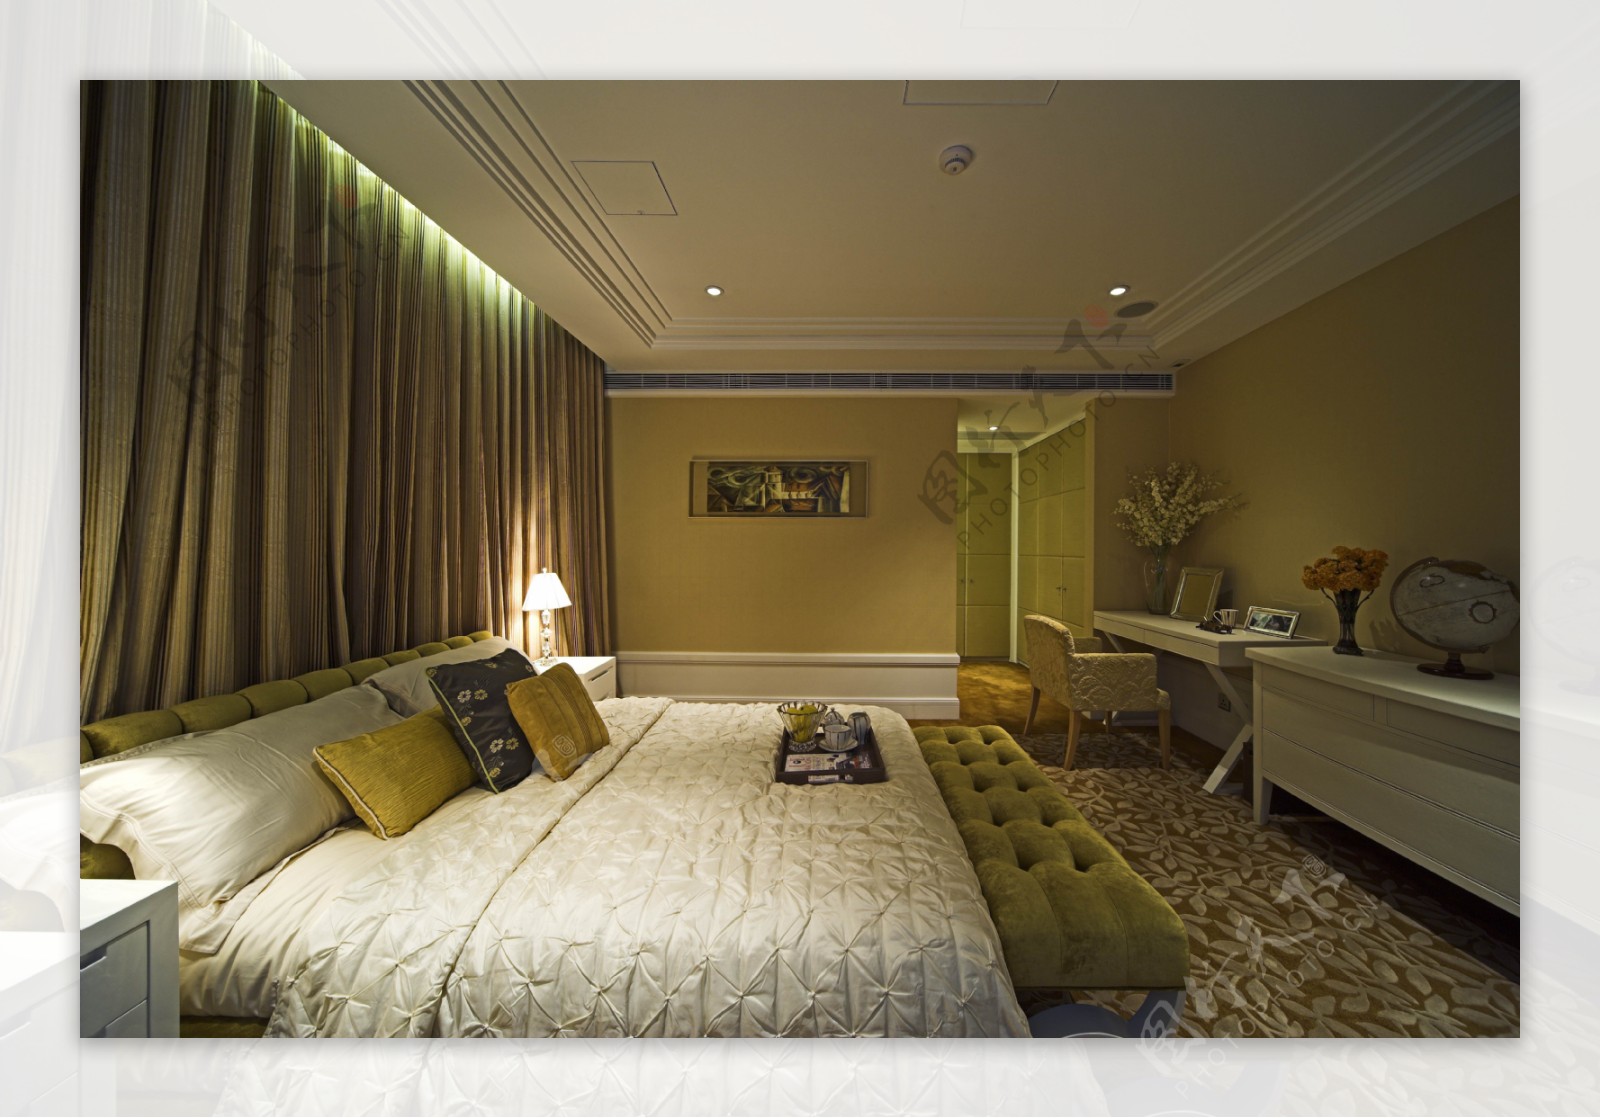 现代时尚卧室深金色窗帘室内装修效果图